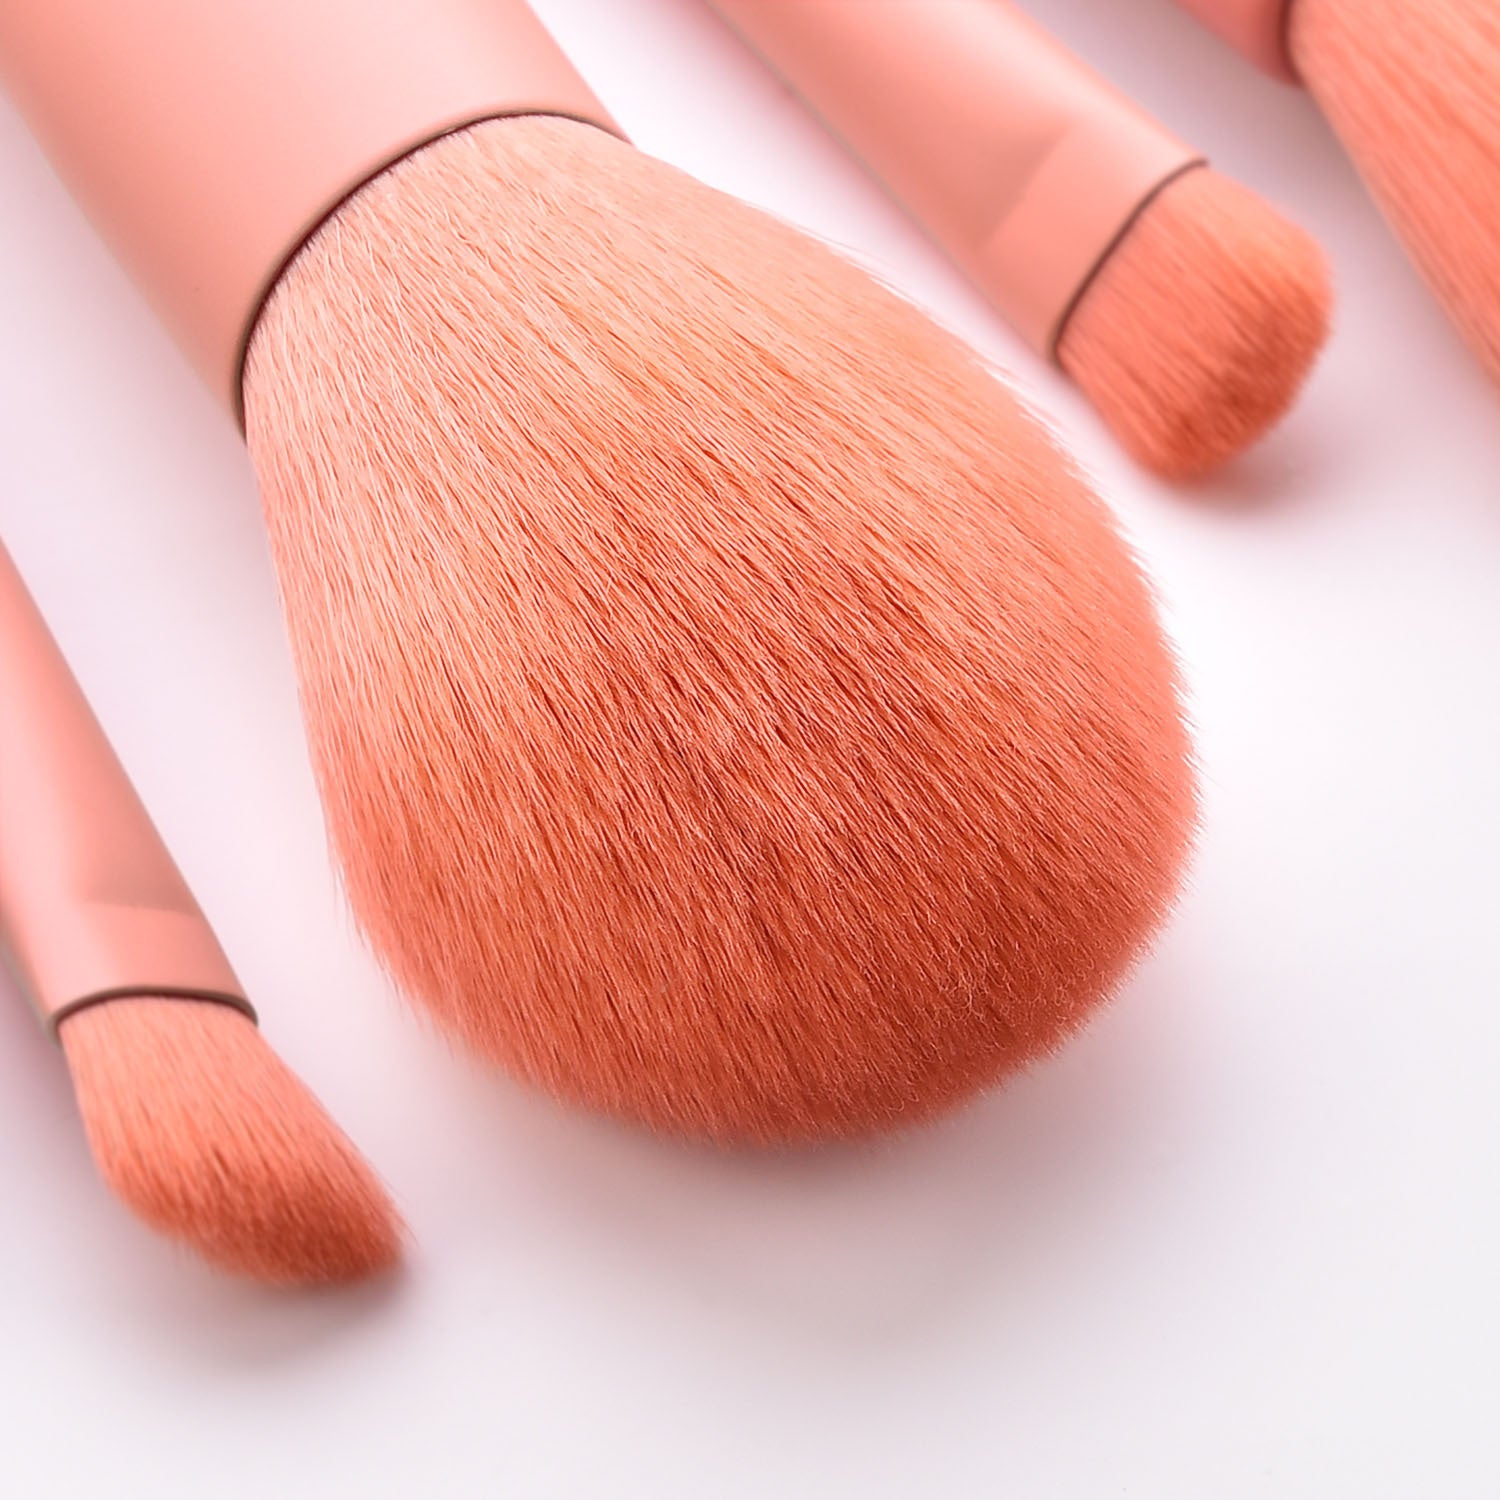 Make-up Brushes-10pcs makeup brushes makeup set